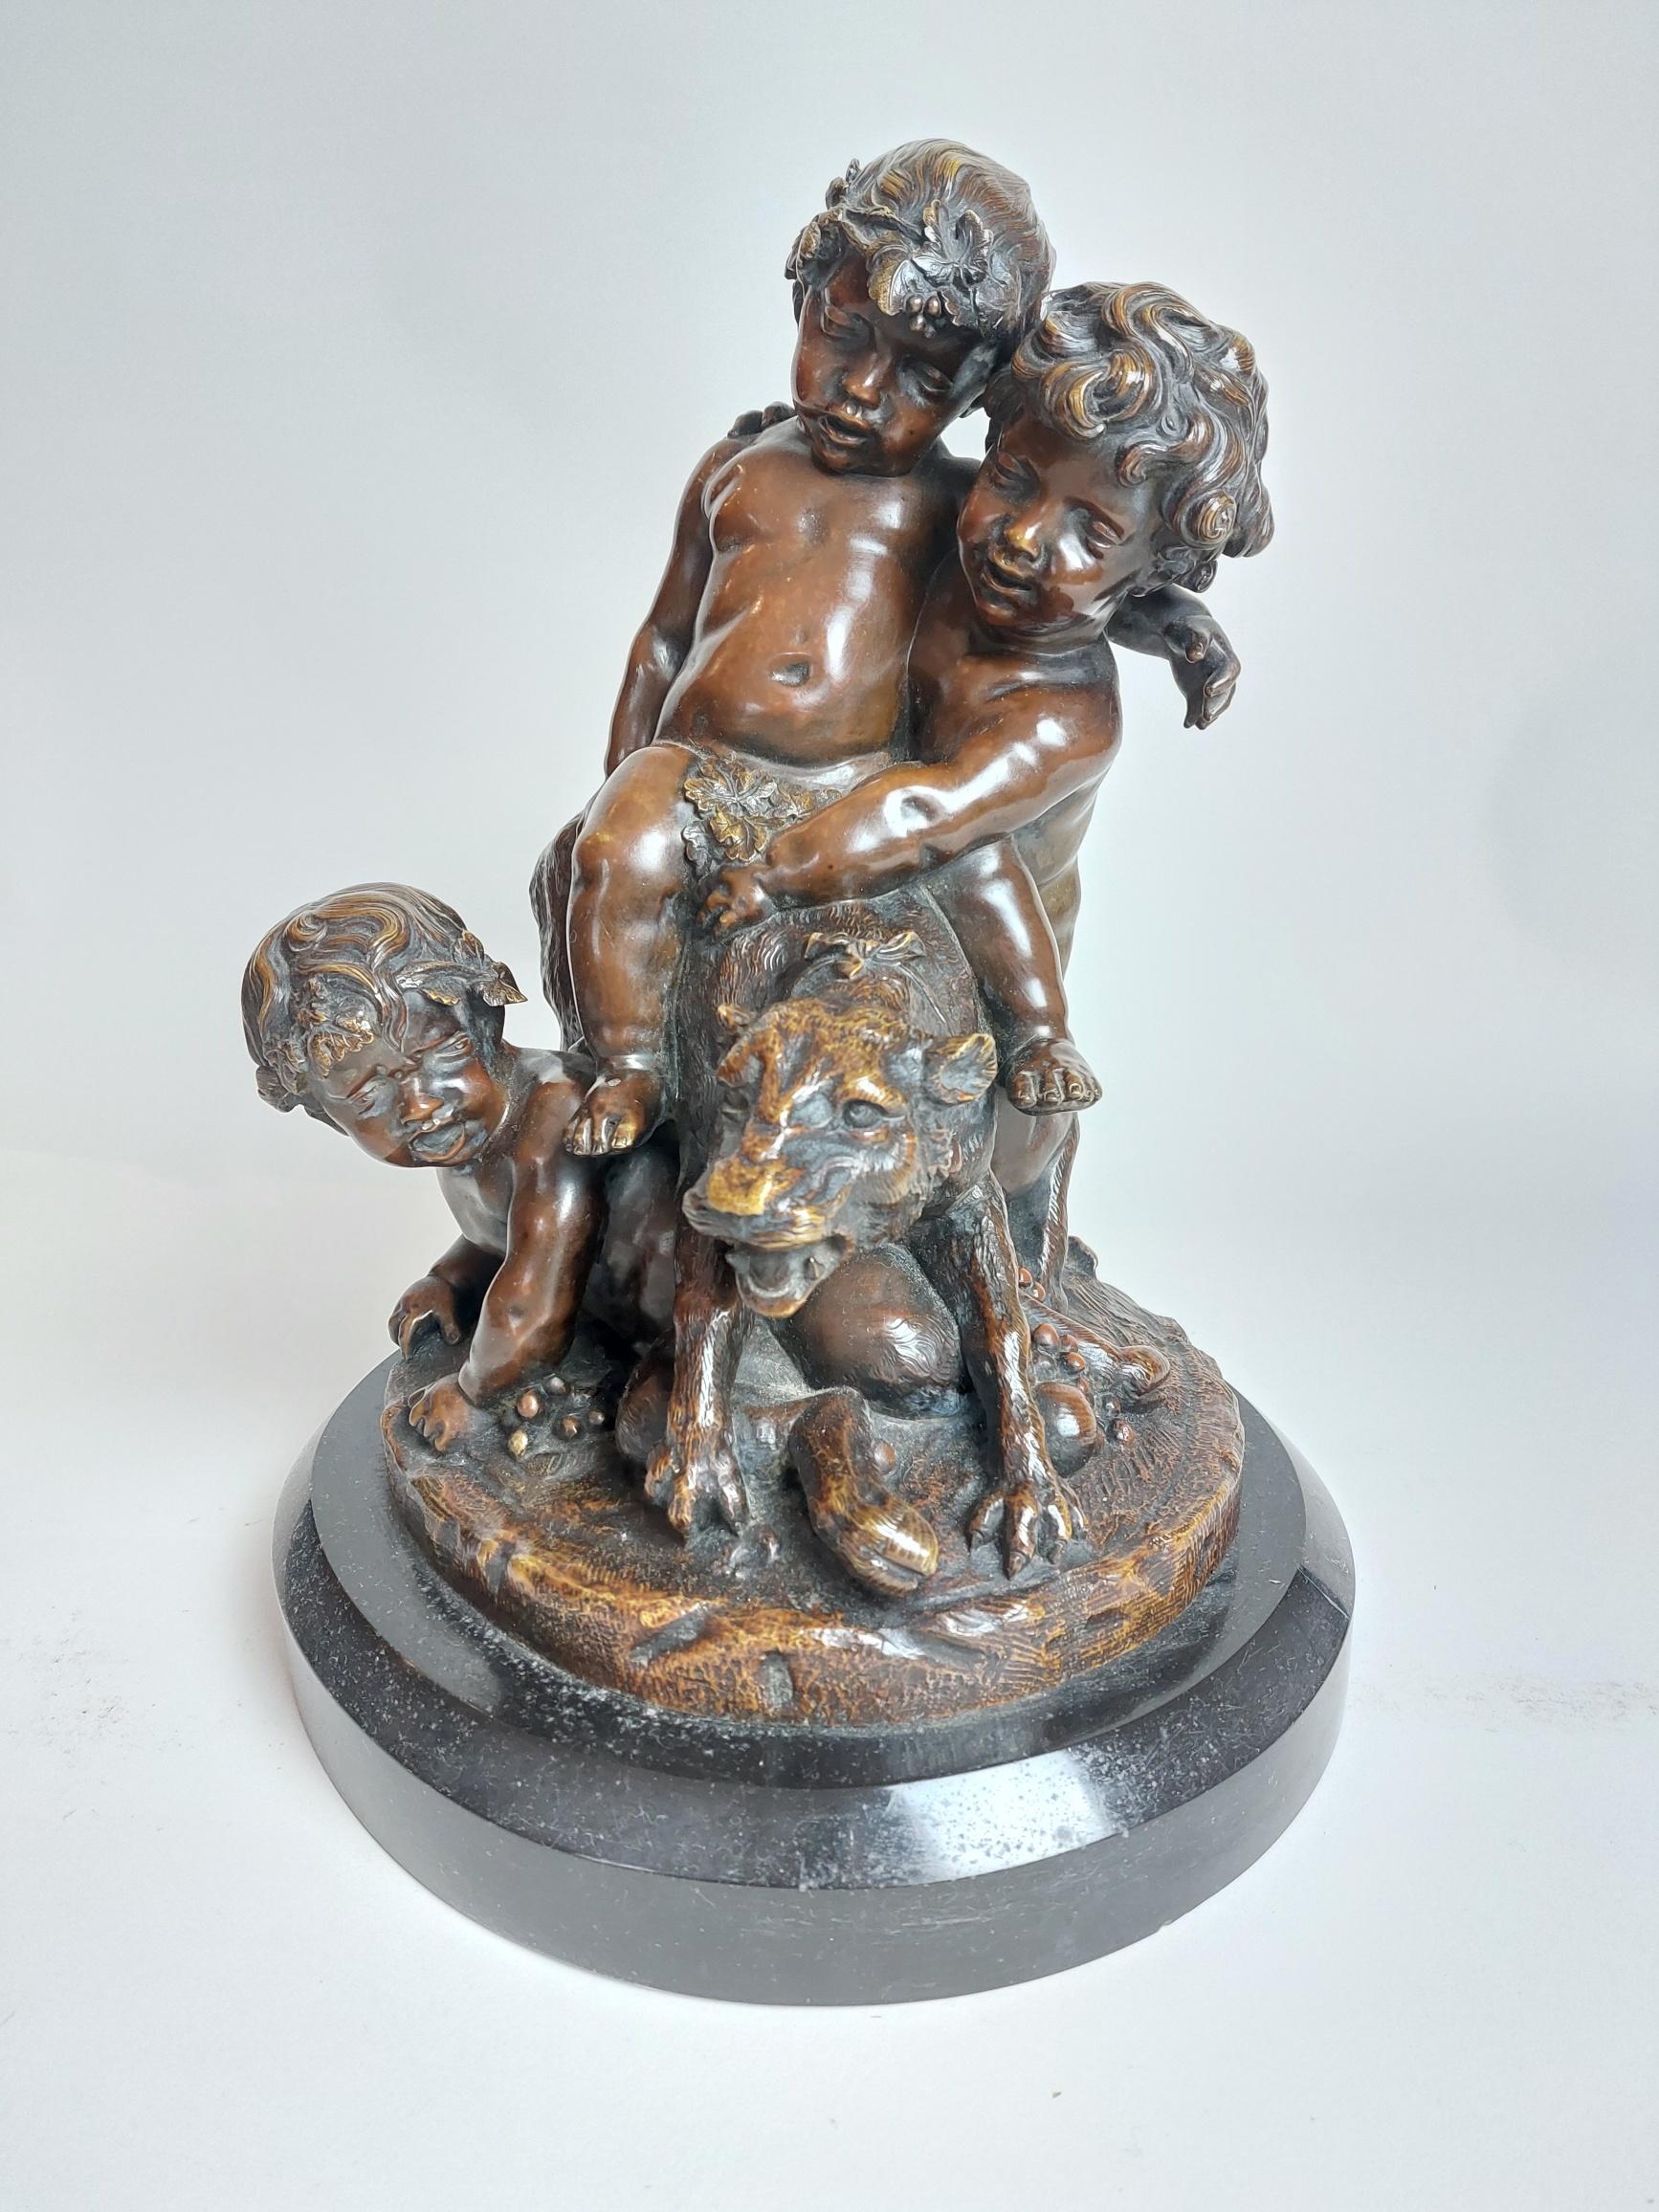 Eine französische Bronze aus dem 19. Jahrhundert mit zwei Putten und einem Rehkitz, die mit einem Panther spielen.
Signiert von Victor Paillard auf einem Marmorsockel

Der Pater schaut verwirrt, als zwei Putten auf seinem Rücken spielen und